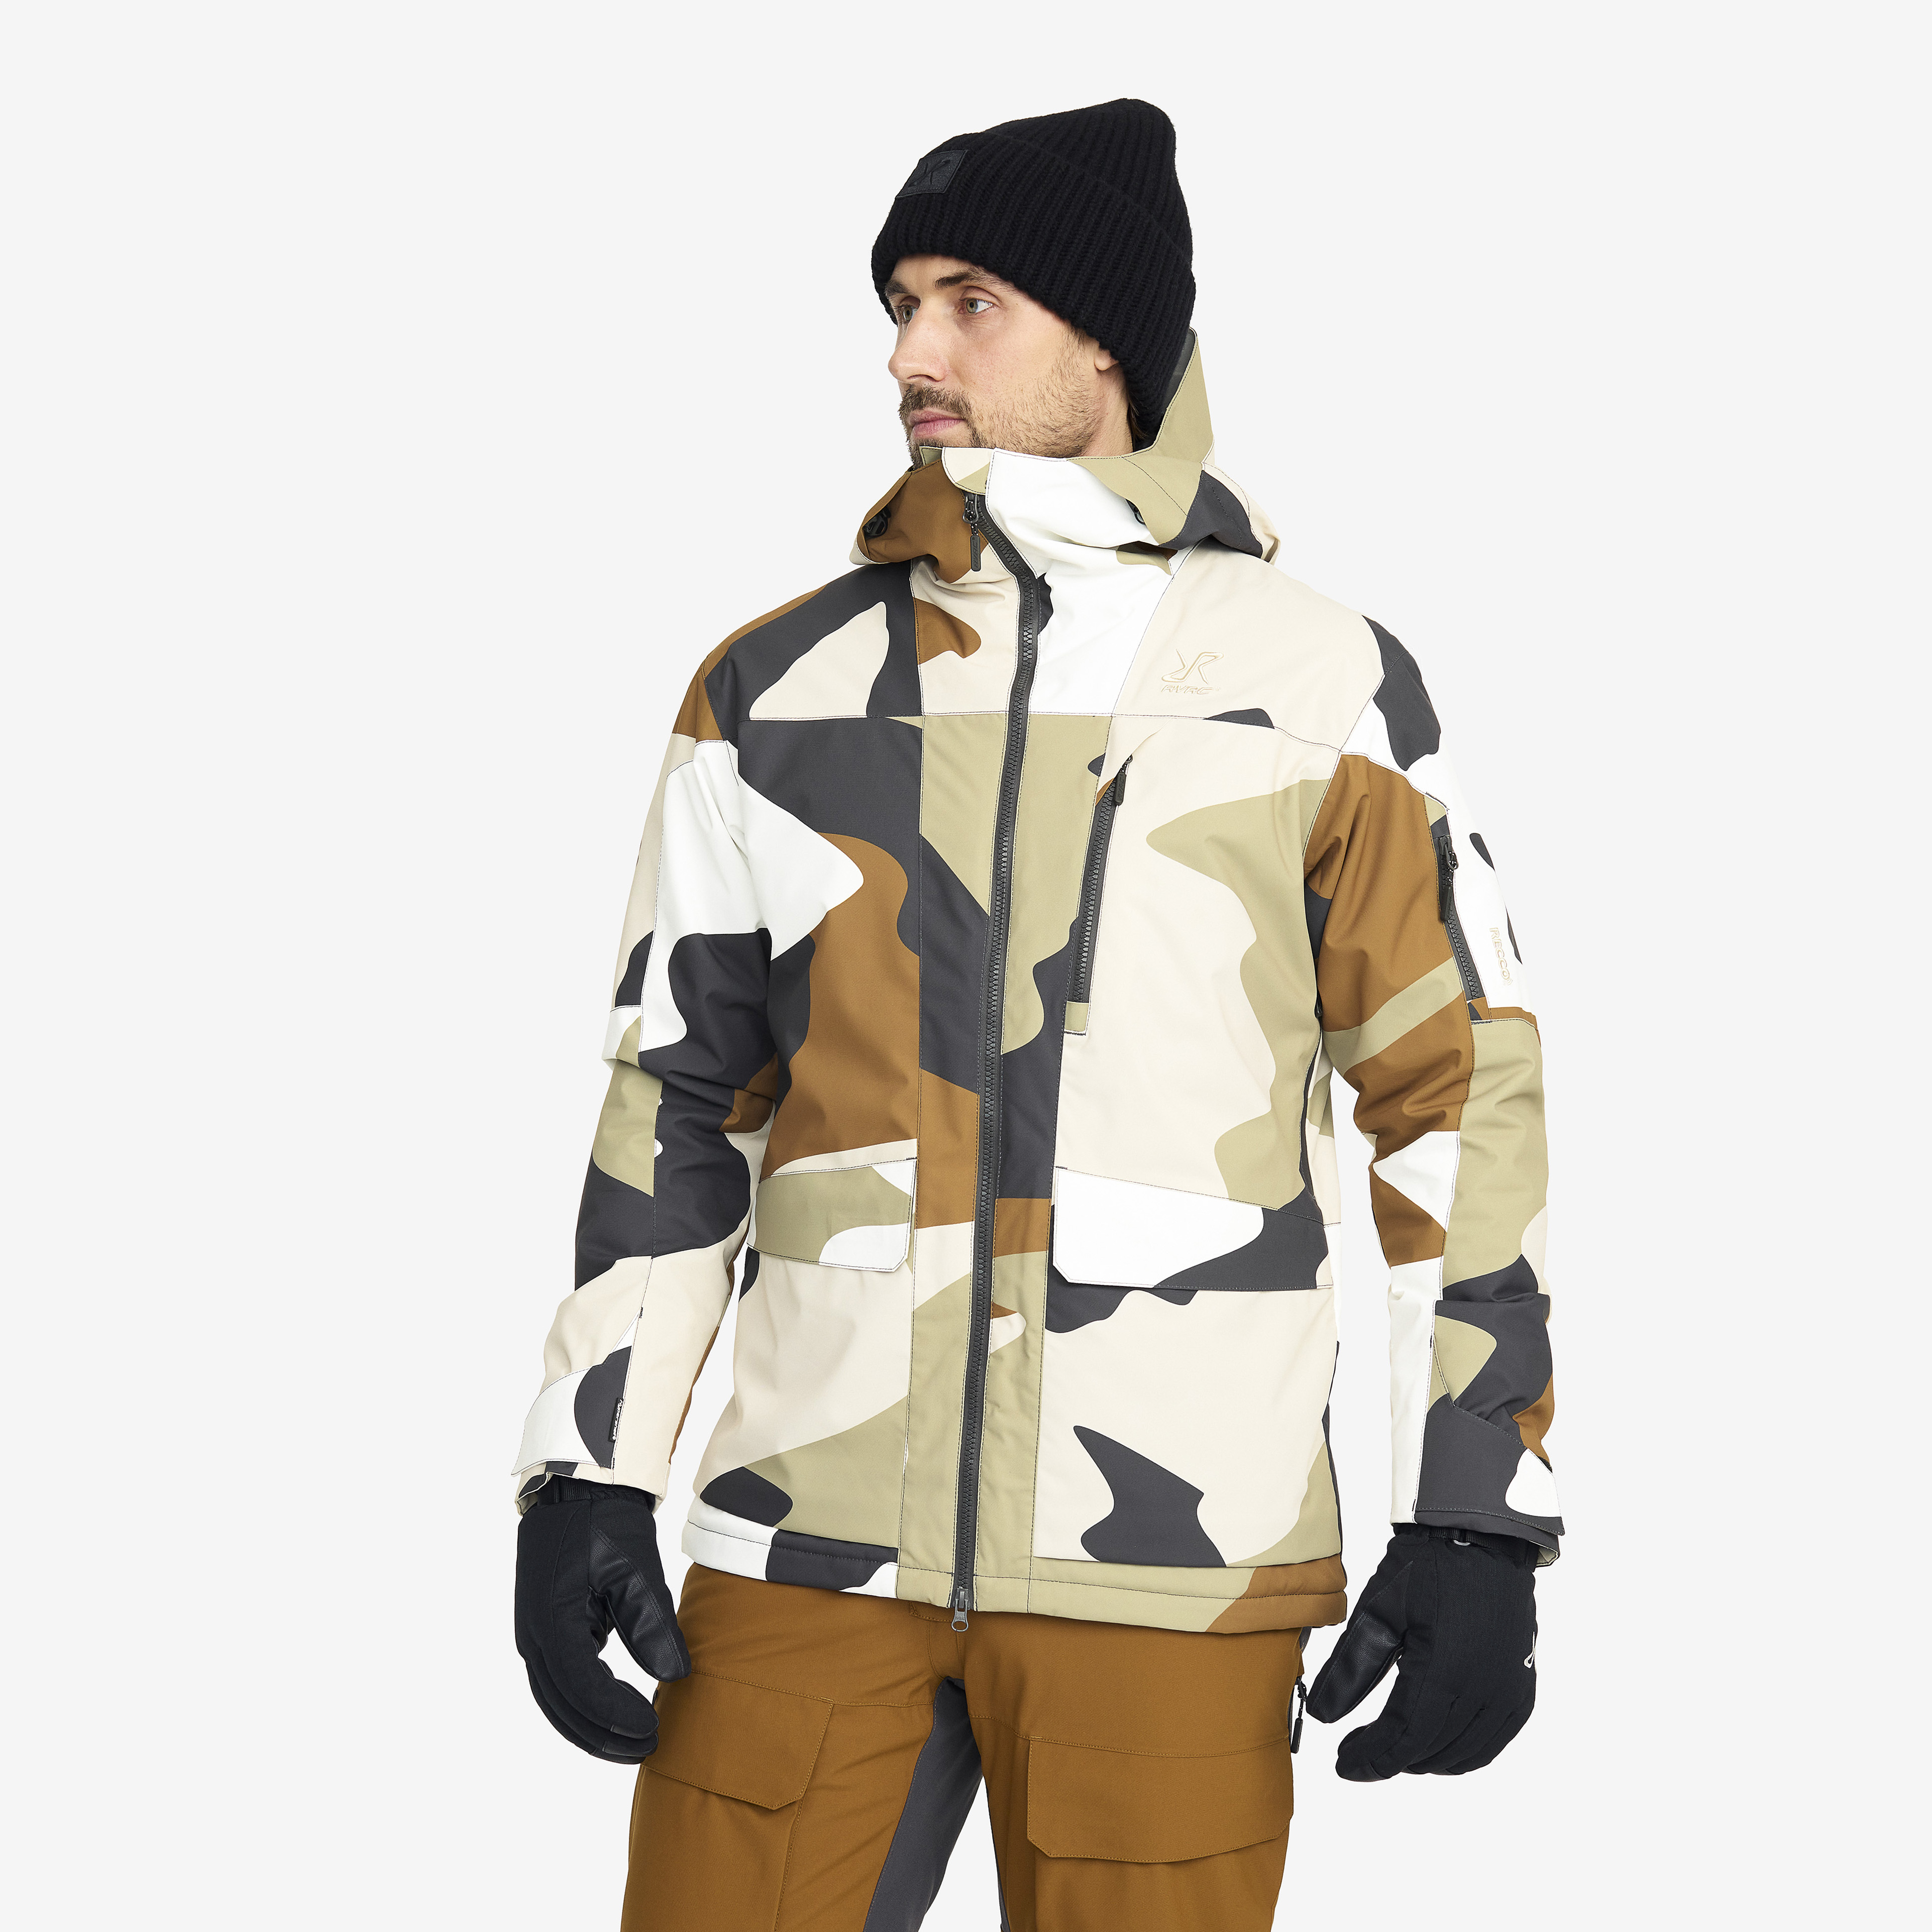 Halo 2L Insulated Ski Jacket – Herr – Anthracite/Rubber Storlek:S – Skaljacka & Vindjacka